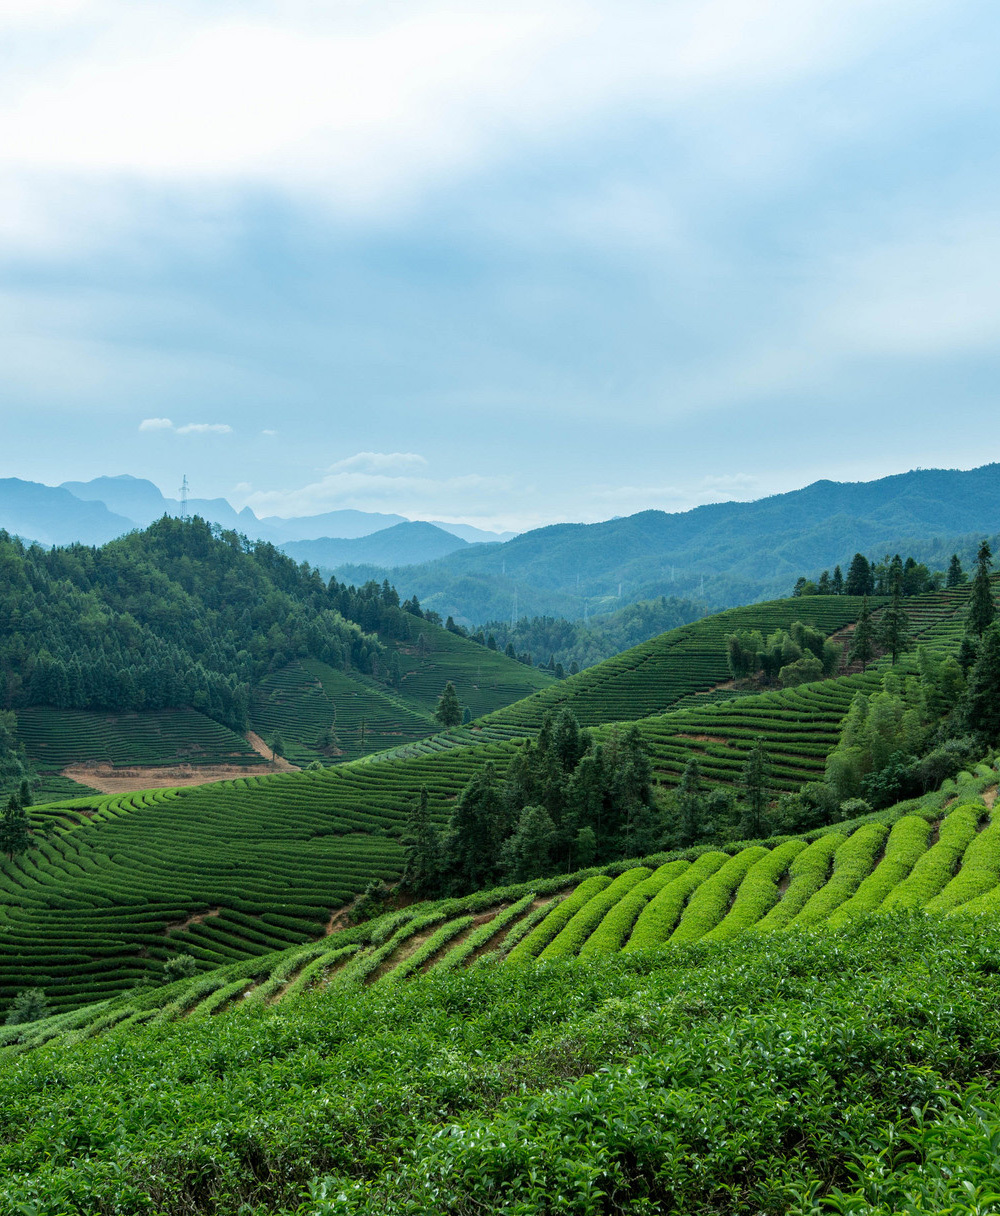 工投茶產業發展有限責任公司